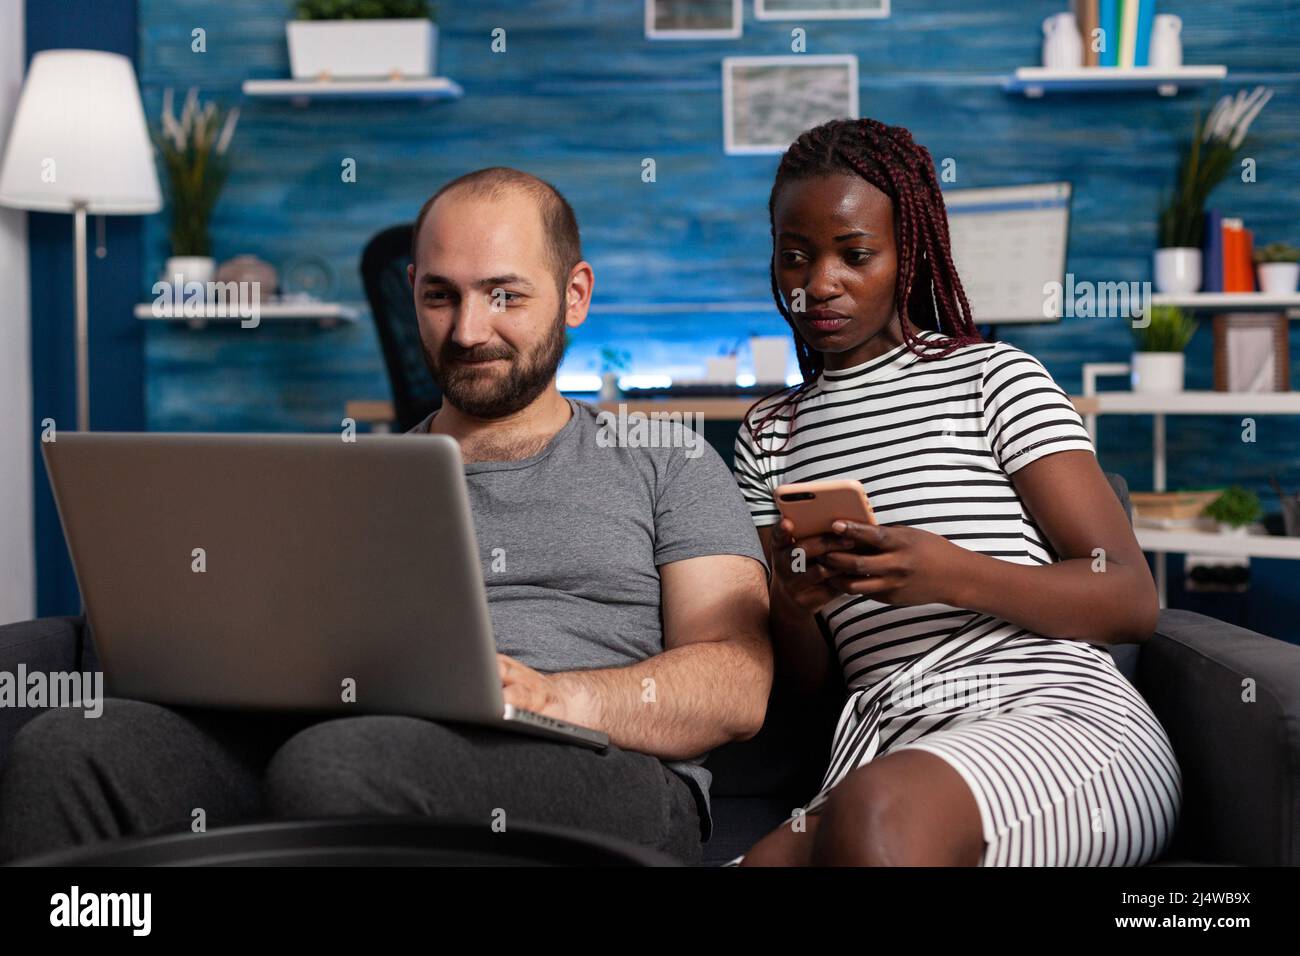 Glücklicher kaukasischer Mann websurfing auf Laptop, während afroamerikanische Frau Smartphone hält und auf den Computerbildschirm schaut. Ein Paar sitzt auf dem Sofa im Wohnzimmer und überprüft Rechnungen und finanzielle Probleme am Computer und Telefon Stockfoto